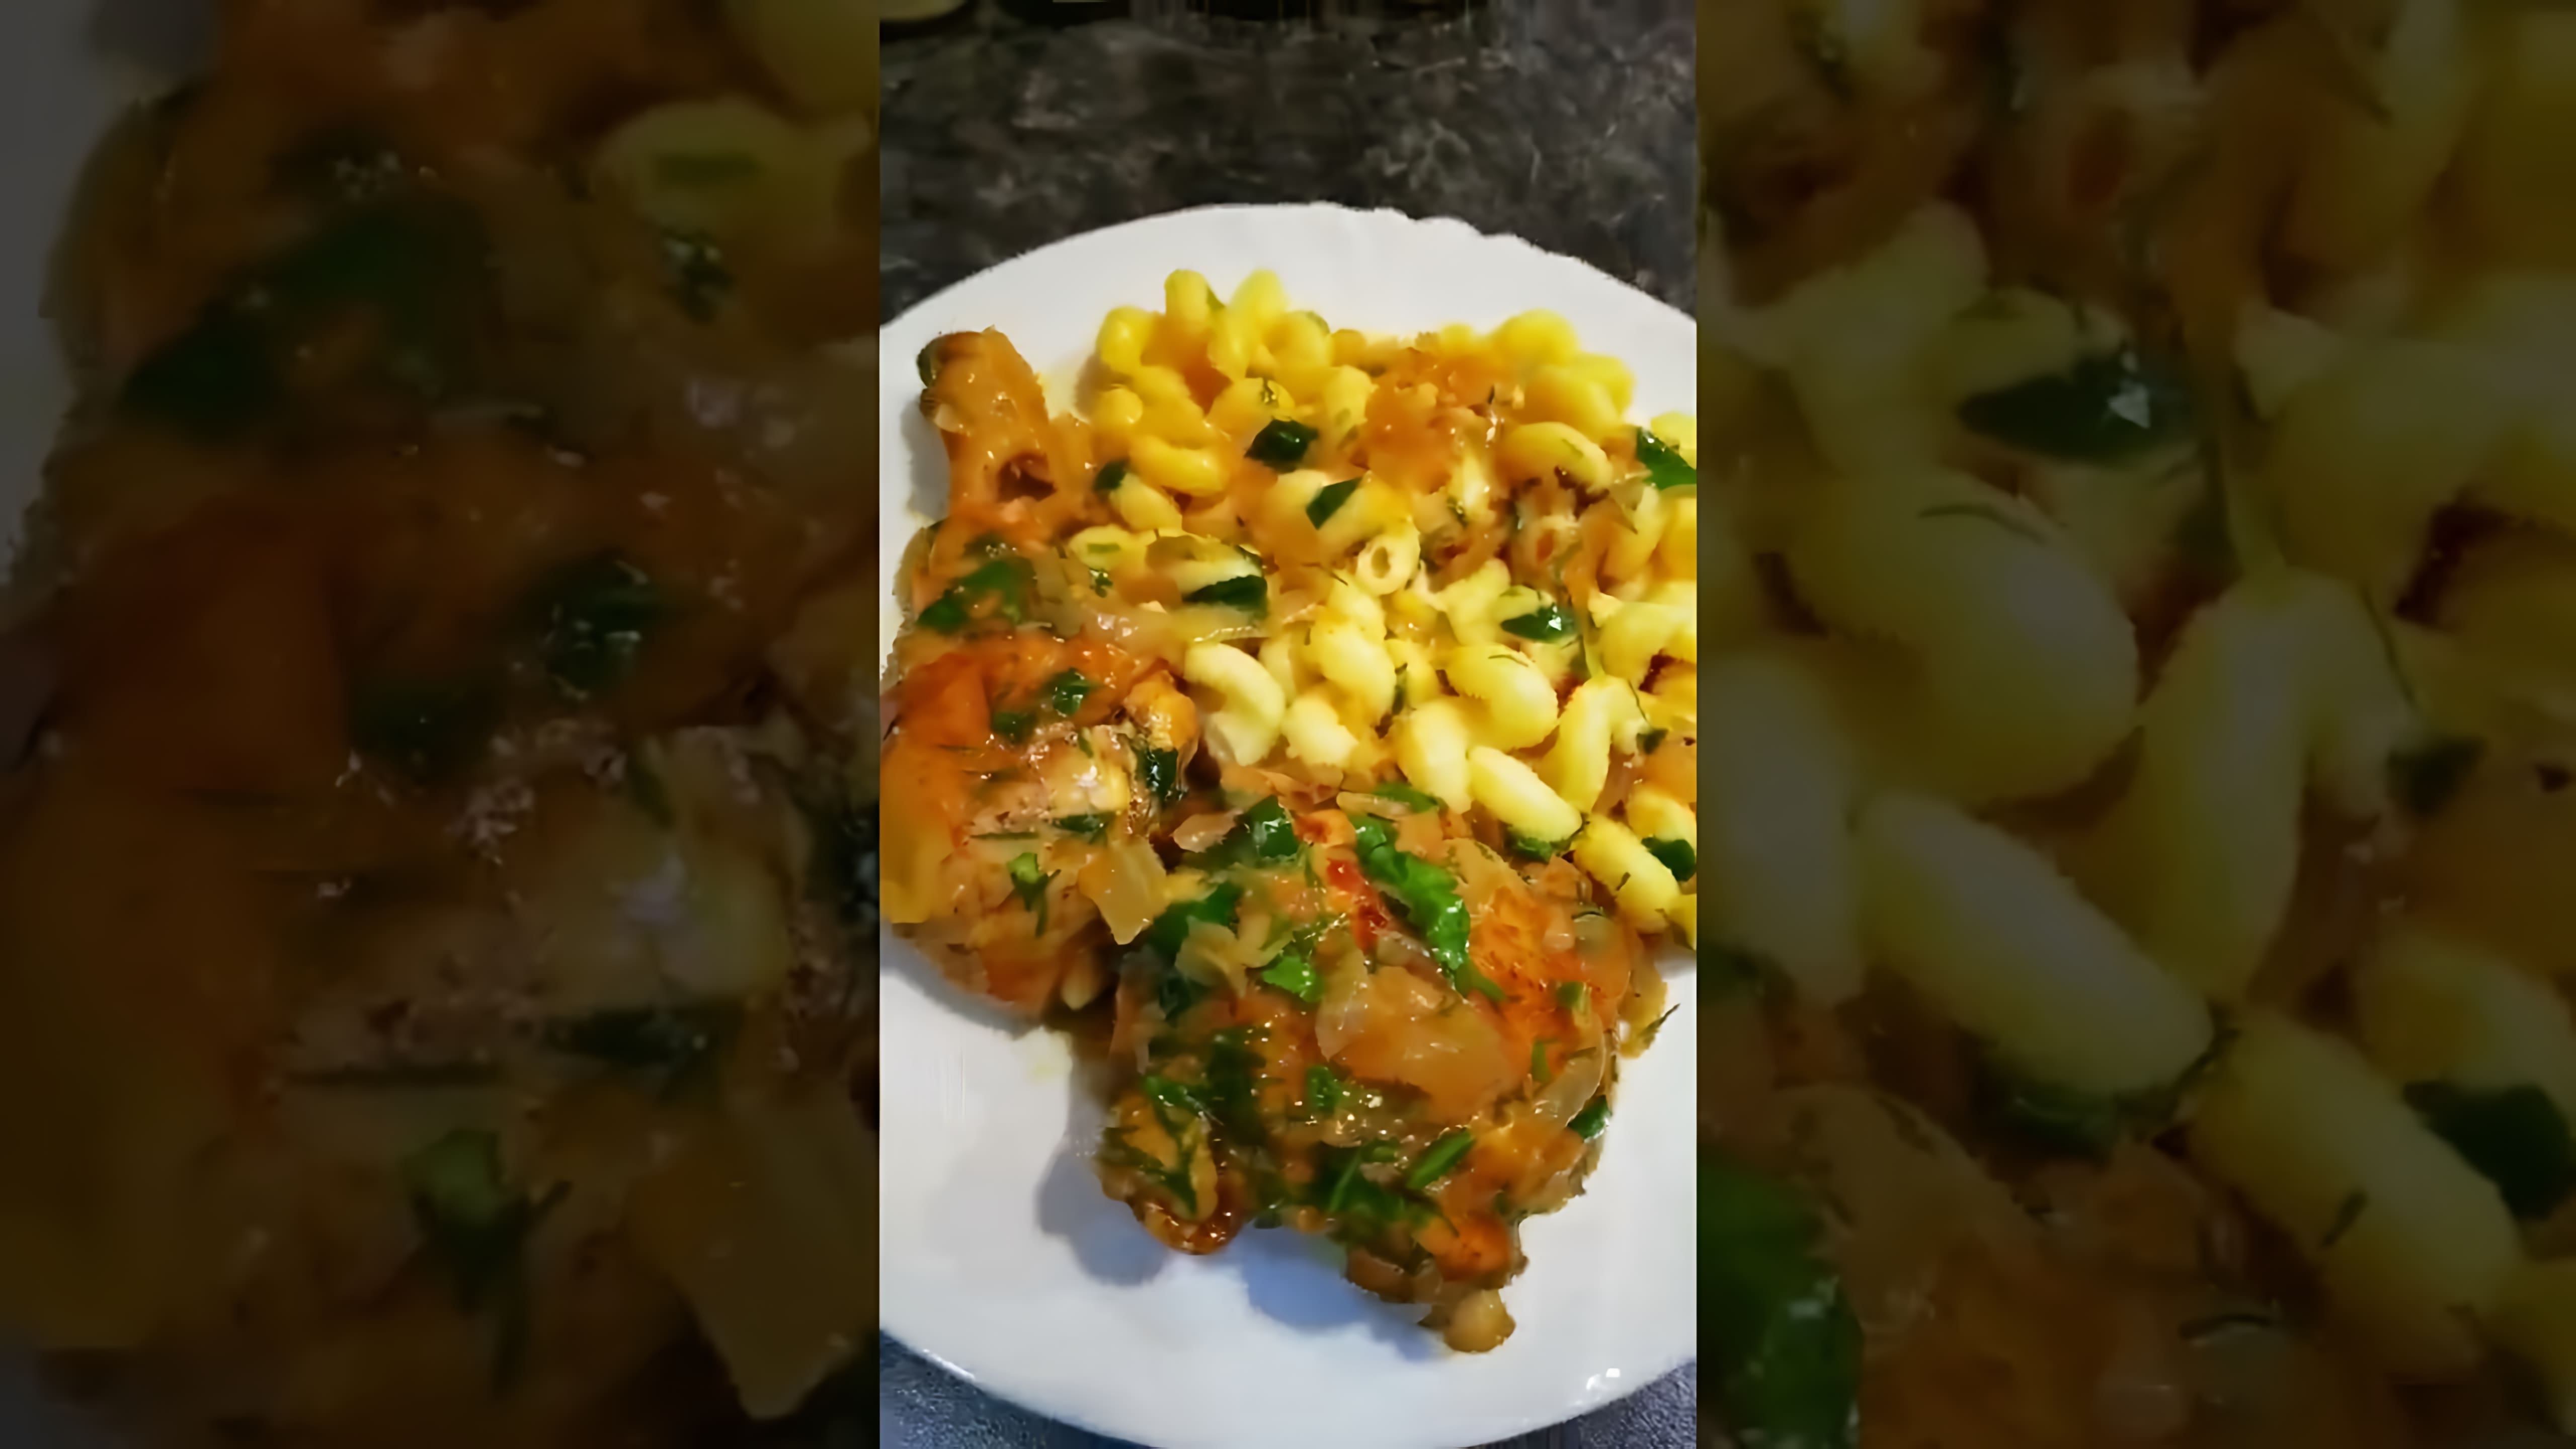 В этом видео-ролике показан процесс приготовления вкусного блюда - куриных ножек и бедер с макаронами в томатном соусе